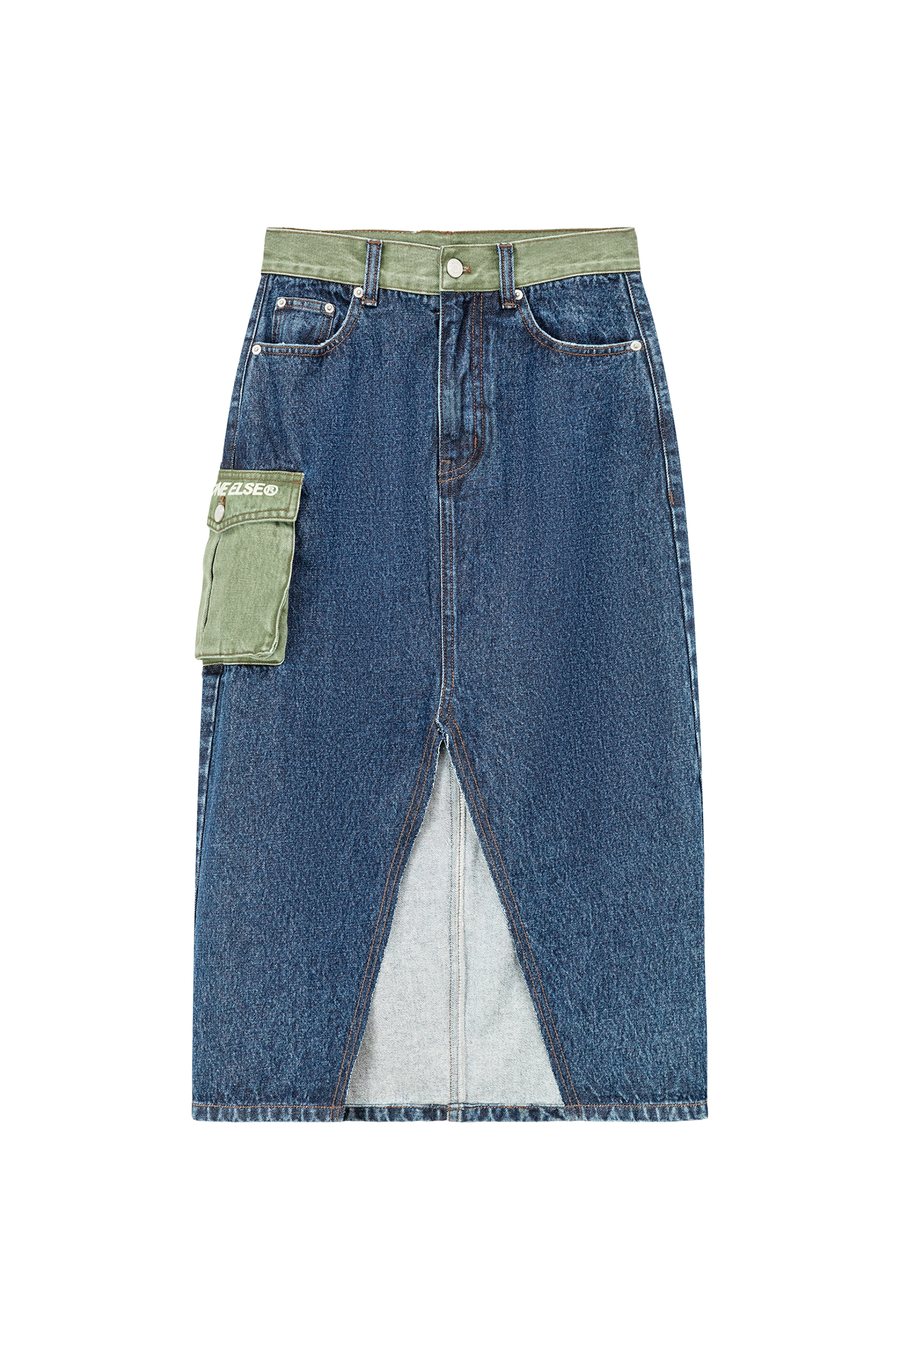 CHUU Pop Of Color Pocket Slit Long Denim Skirt